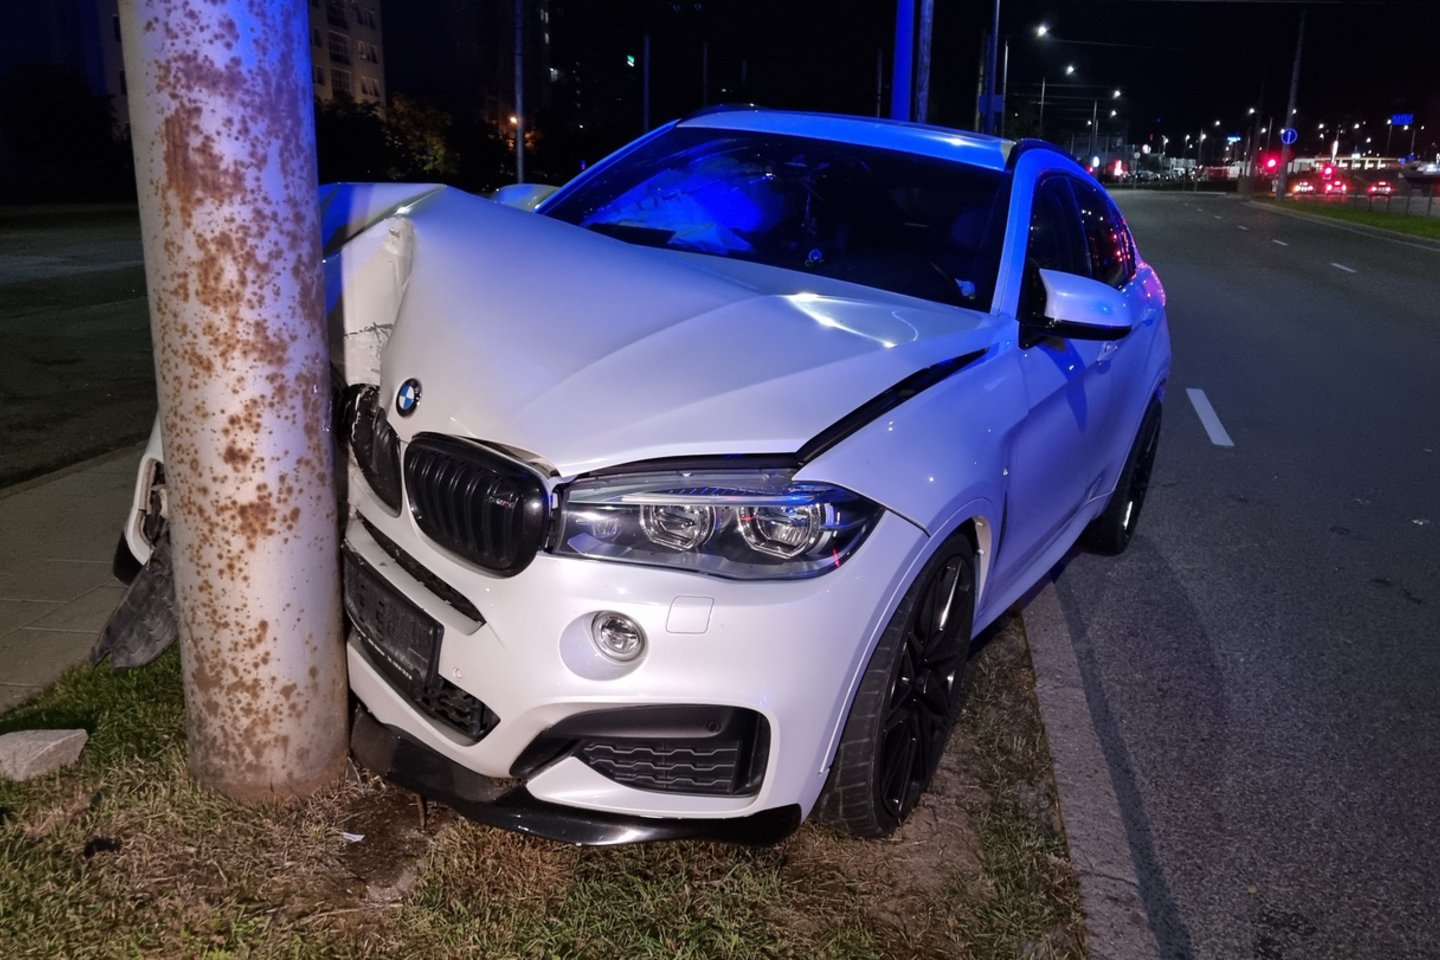  Sprogus BMW padangai Vilniuje automobilis rėžėsi į stulpą – sužeisti 2 žmonės.<br> Lrytas.lt nuotr.